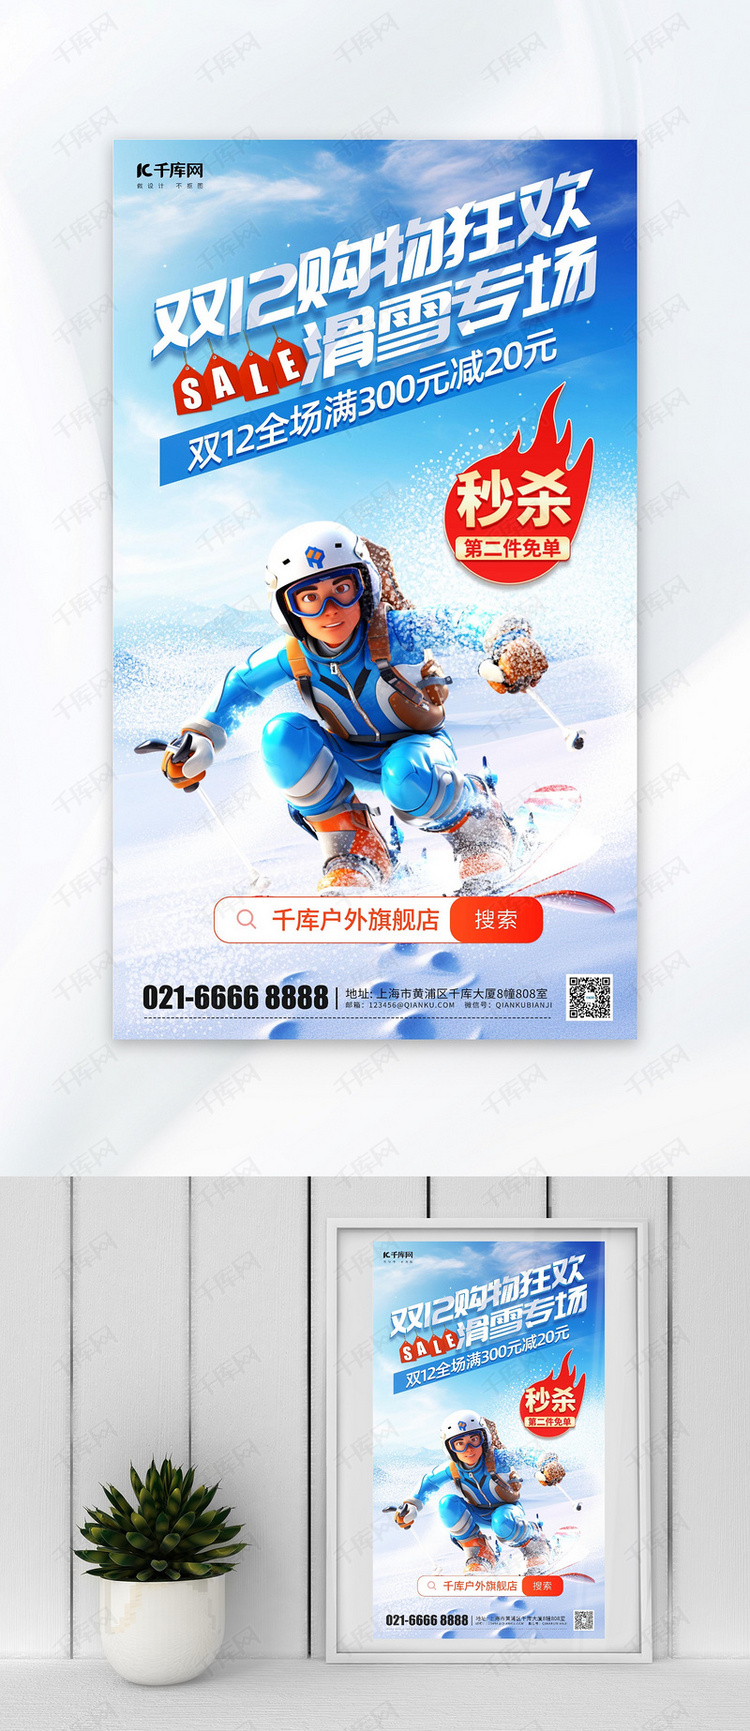 双12购物狂欢滑雪专场蓝色简约海报